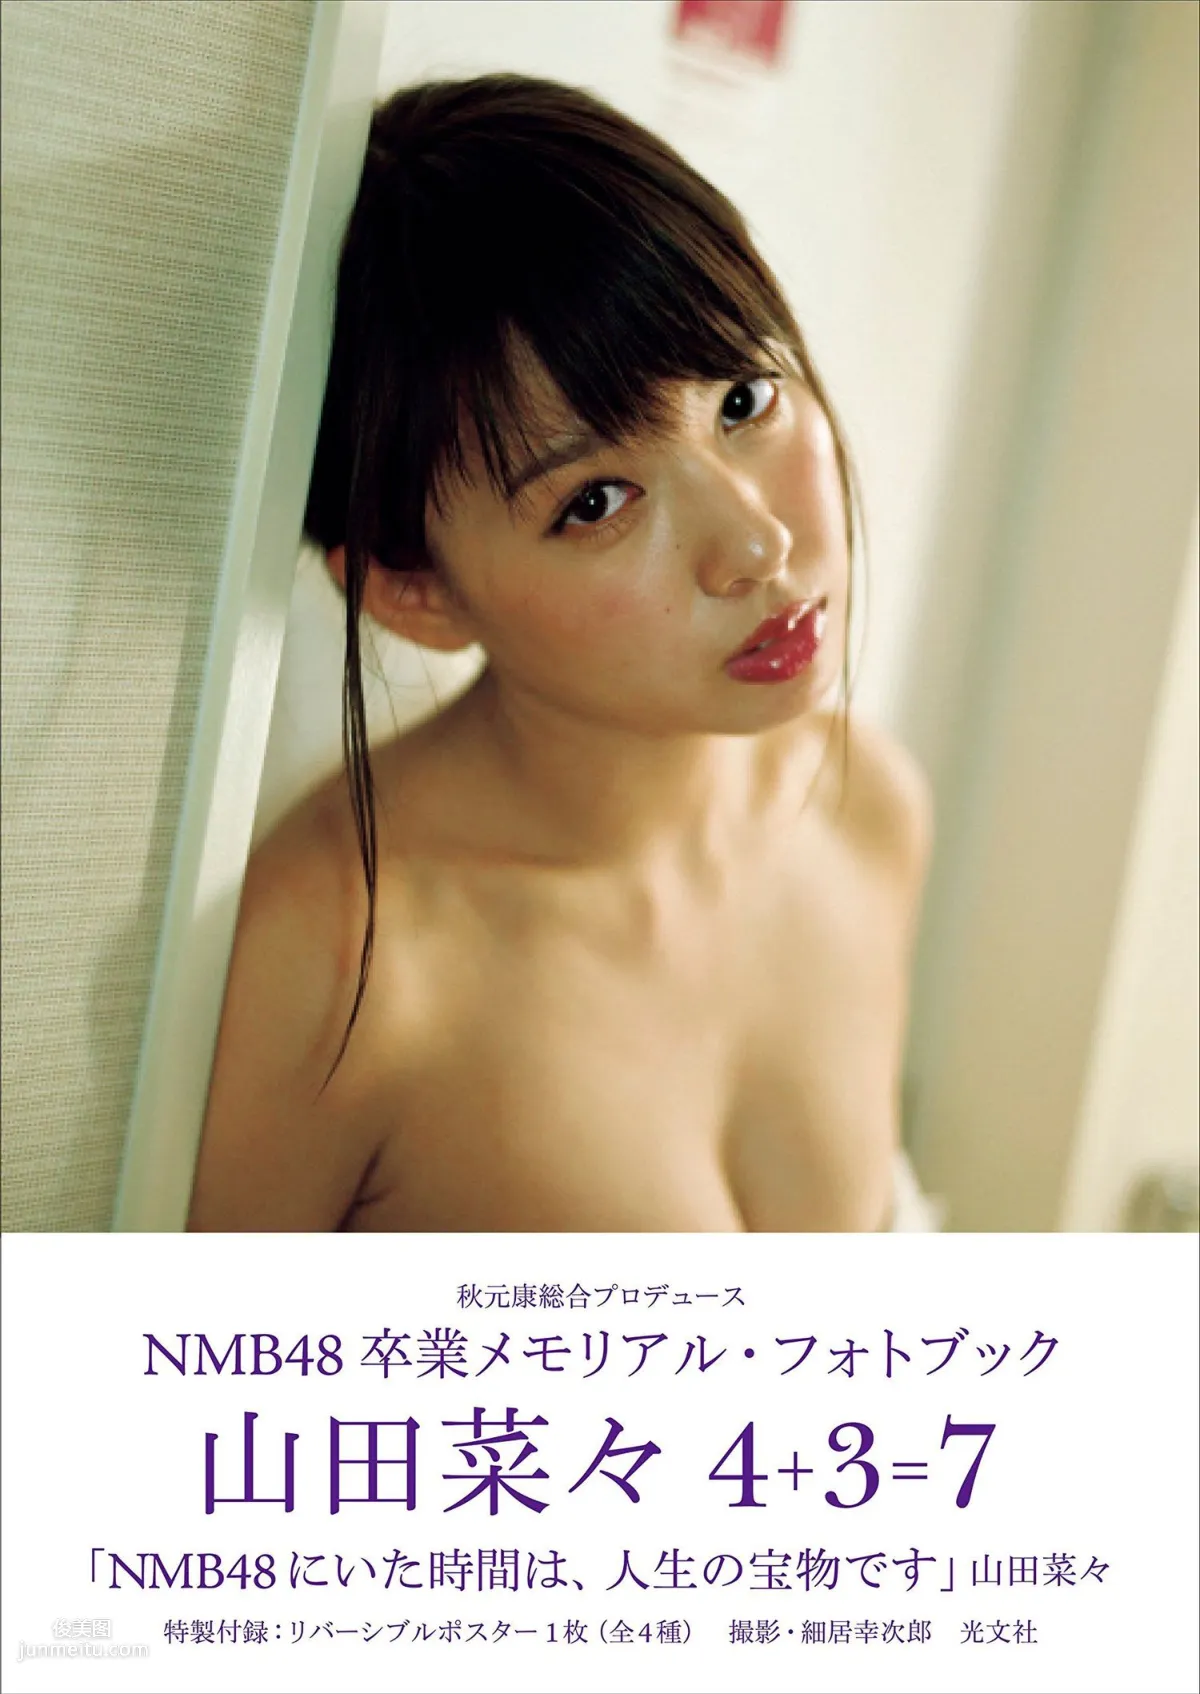 山田菜々/山田菜菜《NMB48卒業メモリアル·フォトブック》 [PB写真集] 1